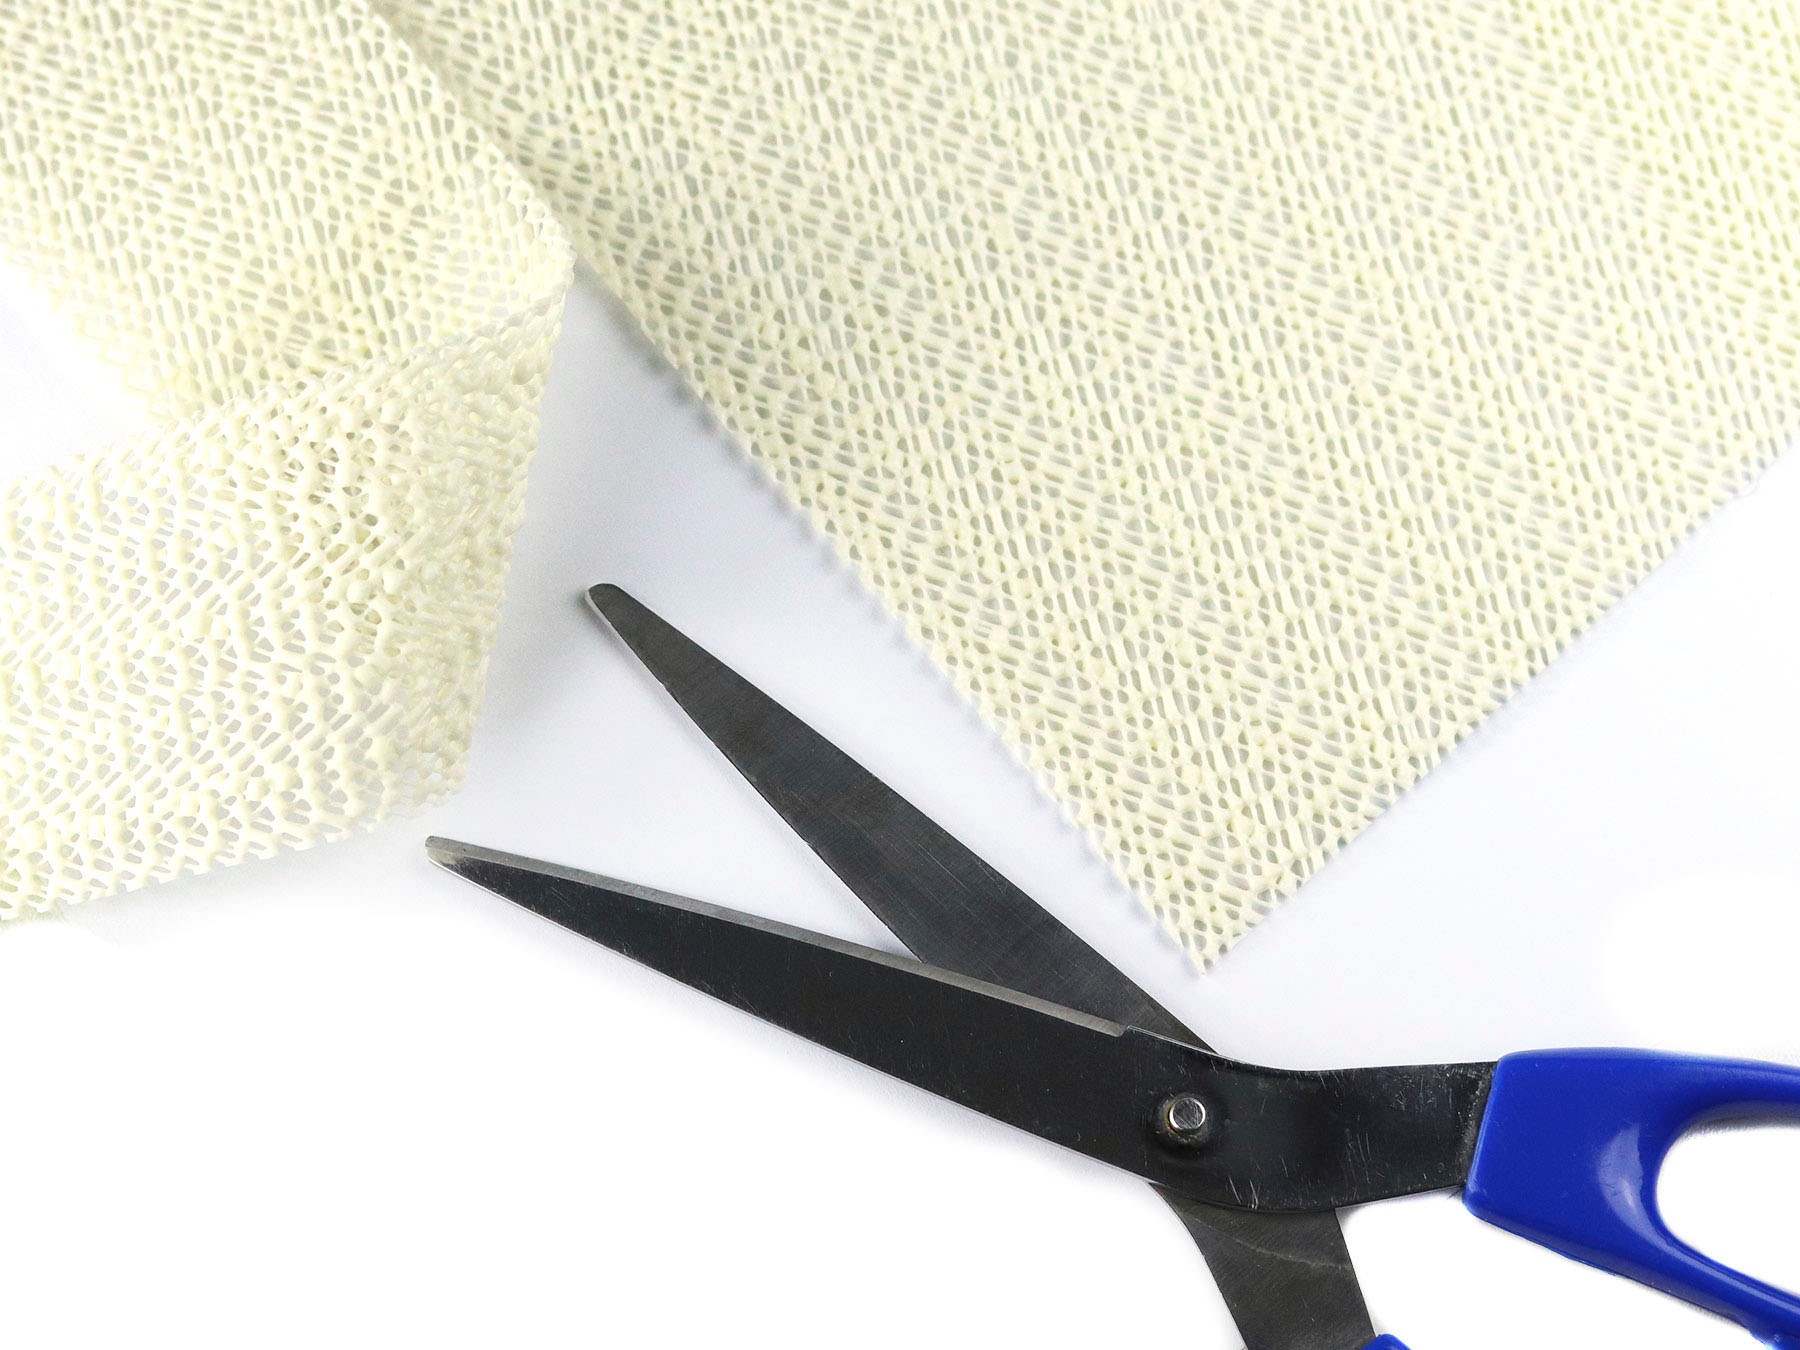 Primaflor-Ideen in Textil Antirutsch Teppichunterlage »STRUKTUR«, Gitter-Rutschunterlage mit Gleitschutz, individuell zuschneidbar